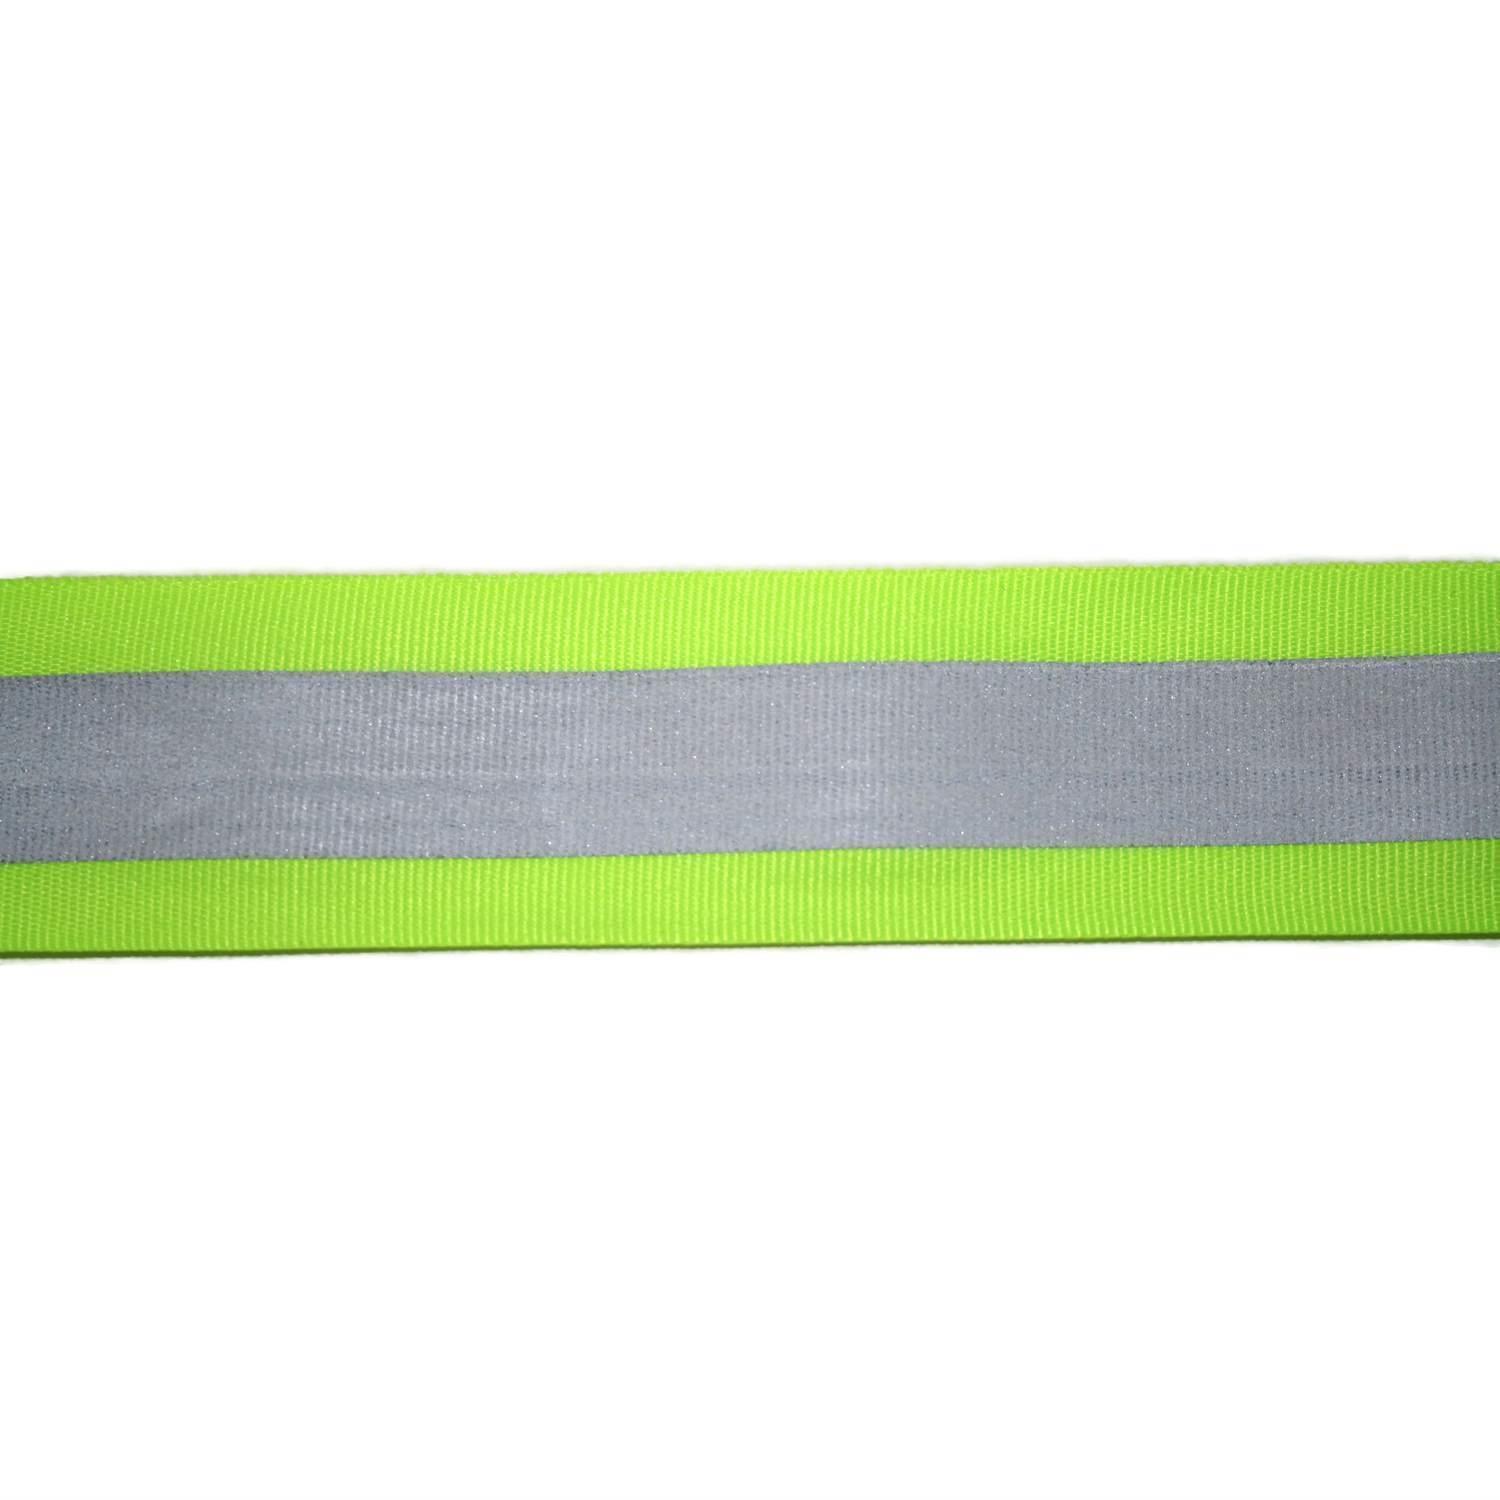 Reflektorband 20mm breit in 6 Farben gelbgrün-silber 05 Meter